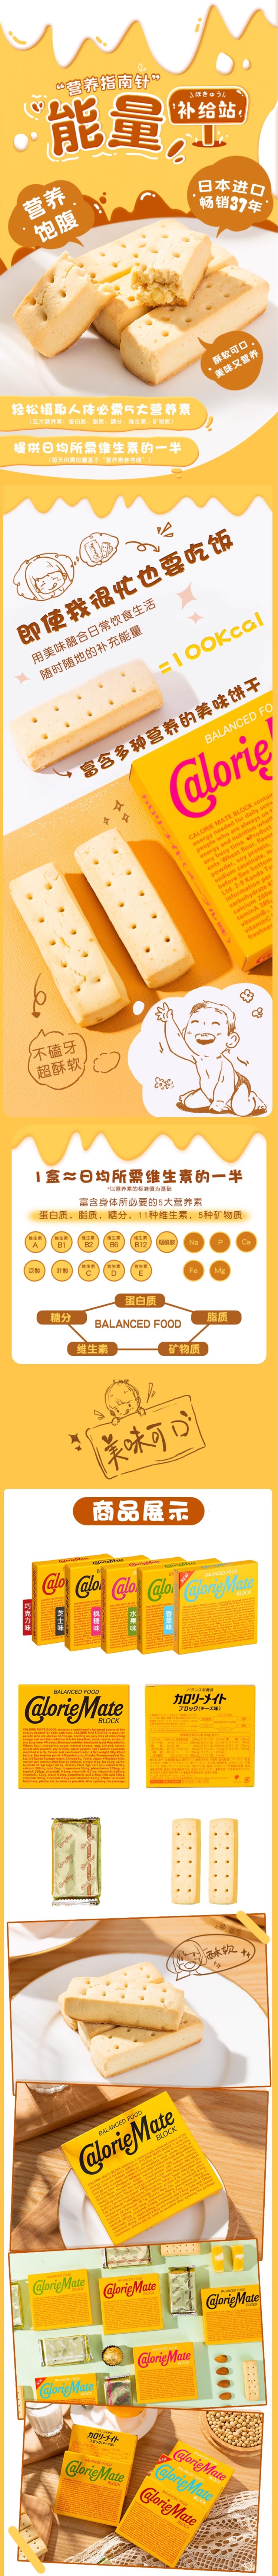 【日本直郵】歐陽娜娜推薦 OTSUKA大塚 卡路里控制平衡能量餅 水果味 80g